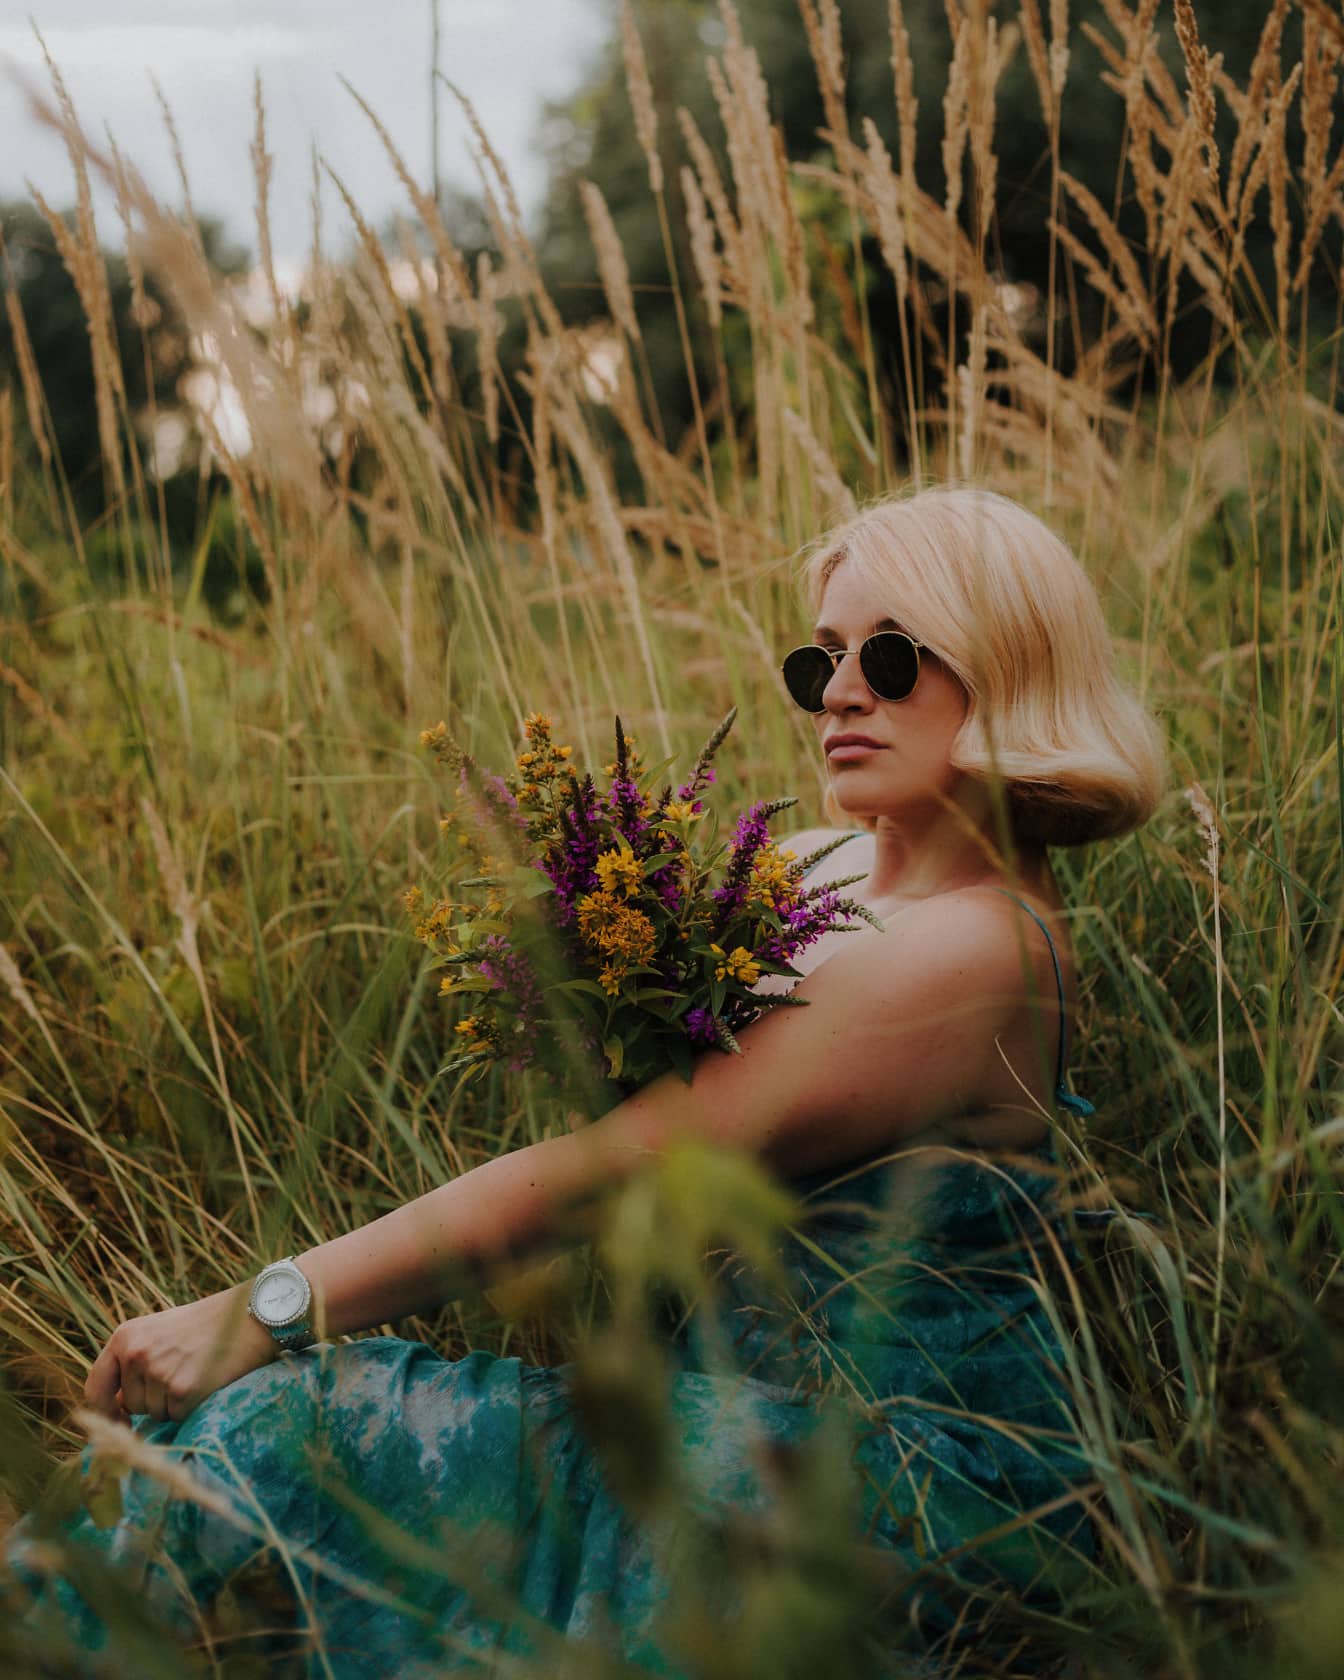 Гламурная блондинка молодая женщина фотомодель позирует в траве растений с букетом полевых цветов